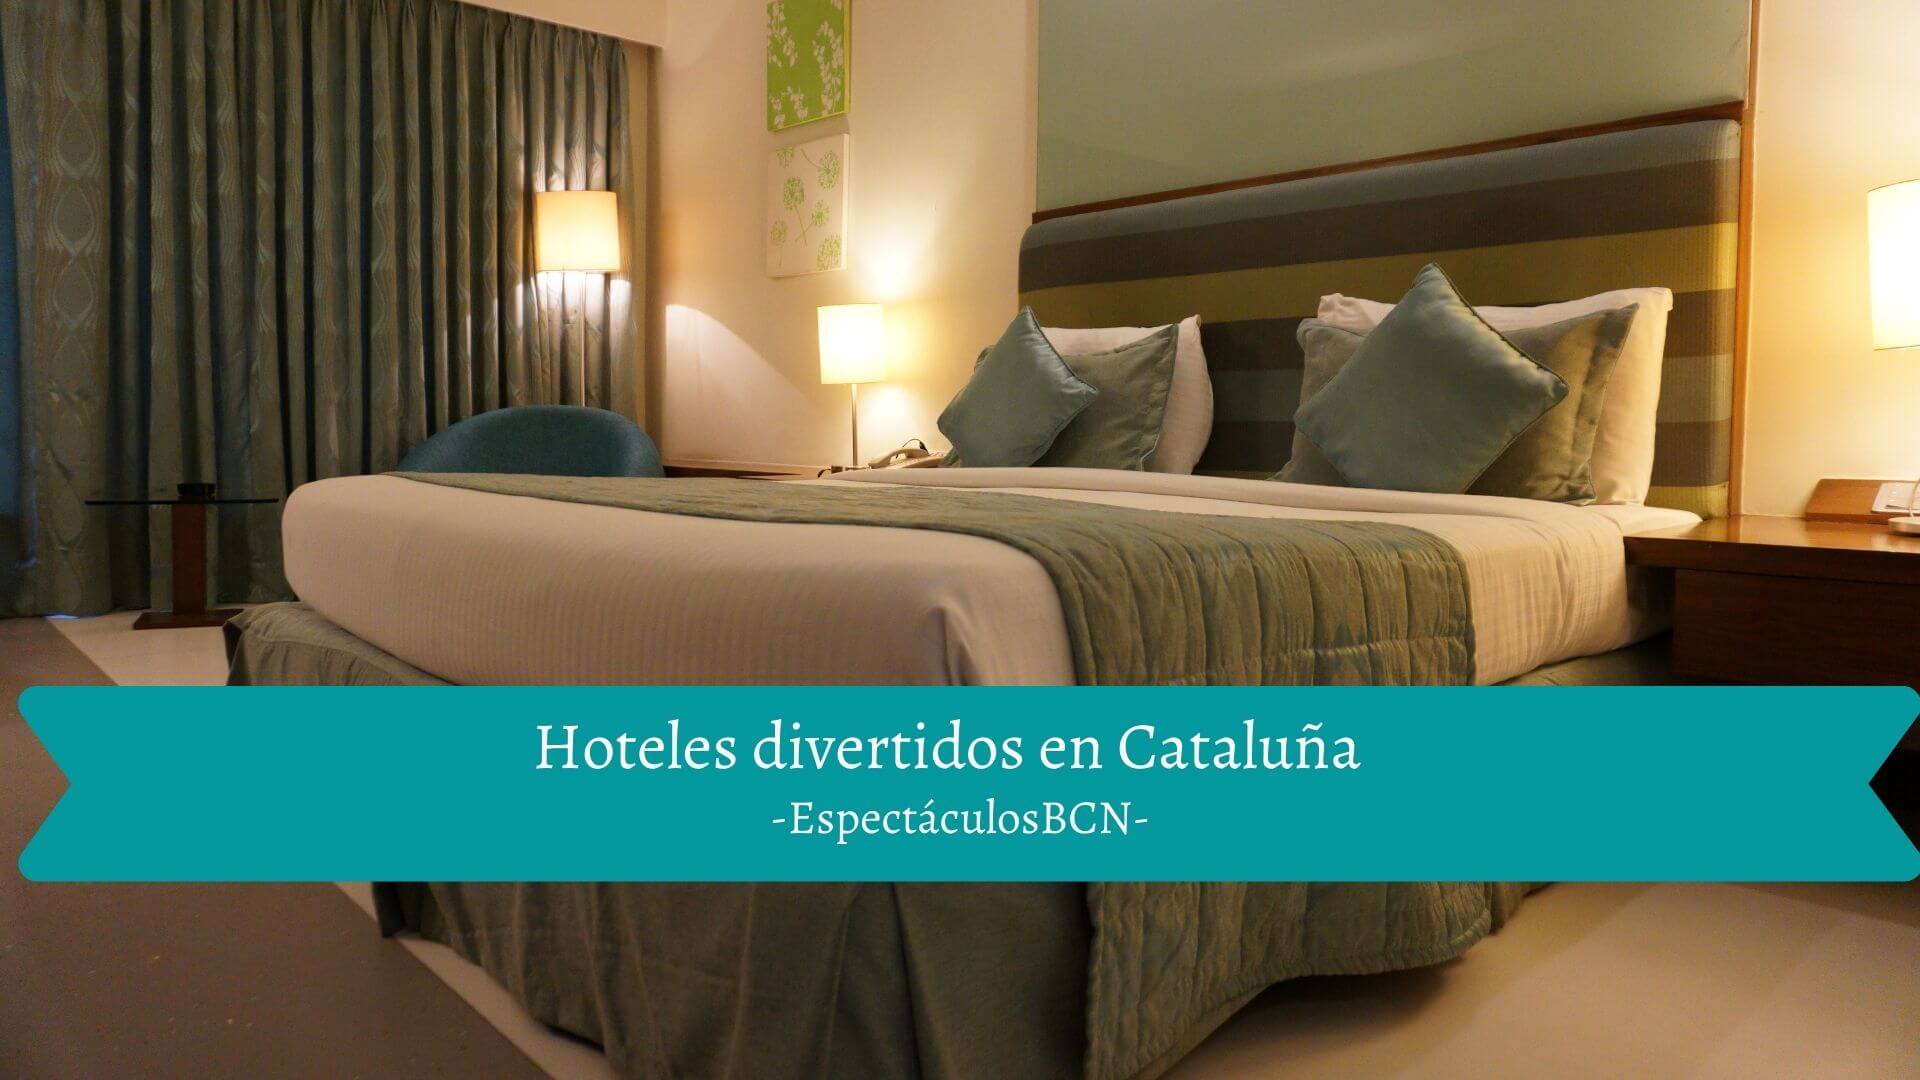 9 hoteles divertidos en Cataluña para una escapada diferente